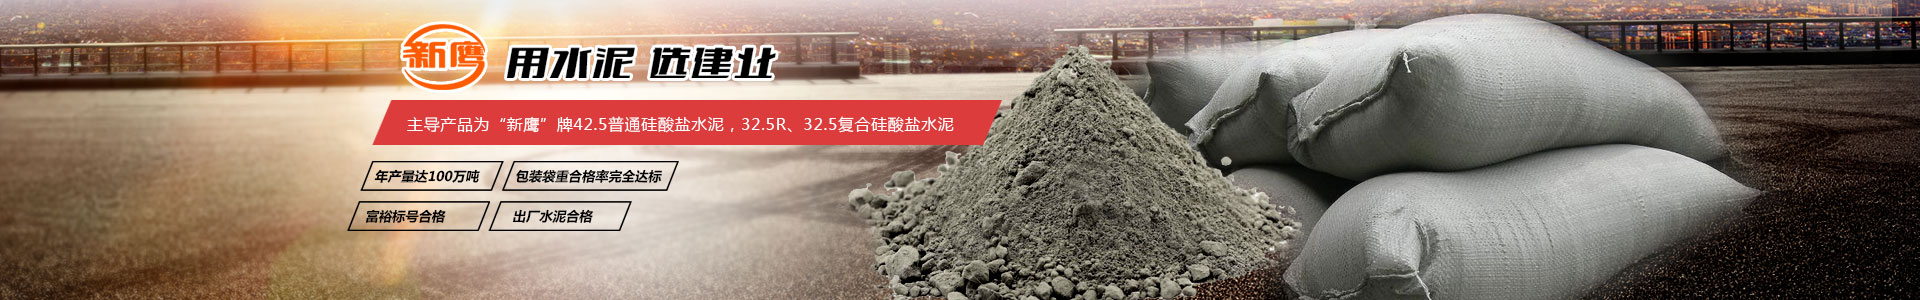 水泥批发_河南建筑水泥生产厂家_供应32.5复合硅酸盐水泥_42.5普通硅酸盐水泥